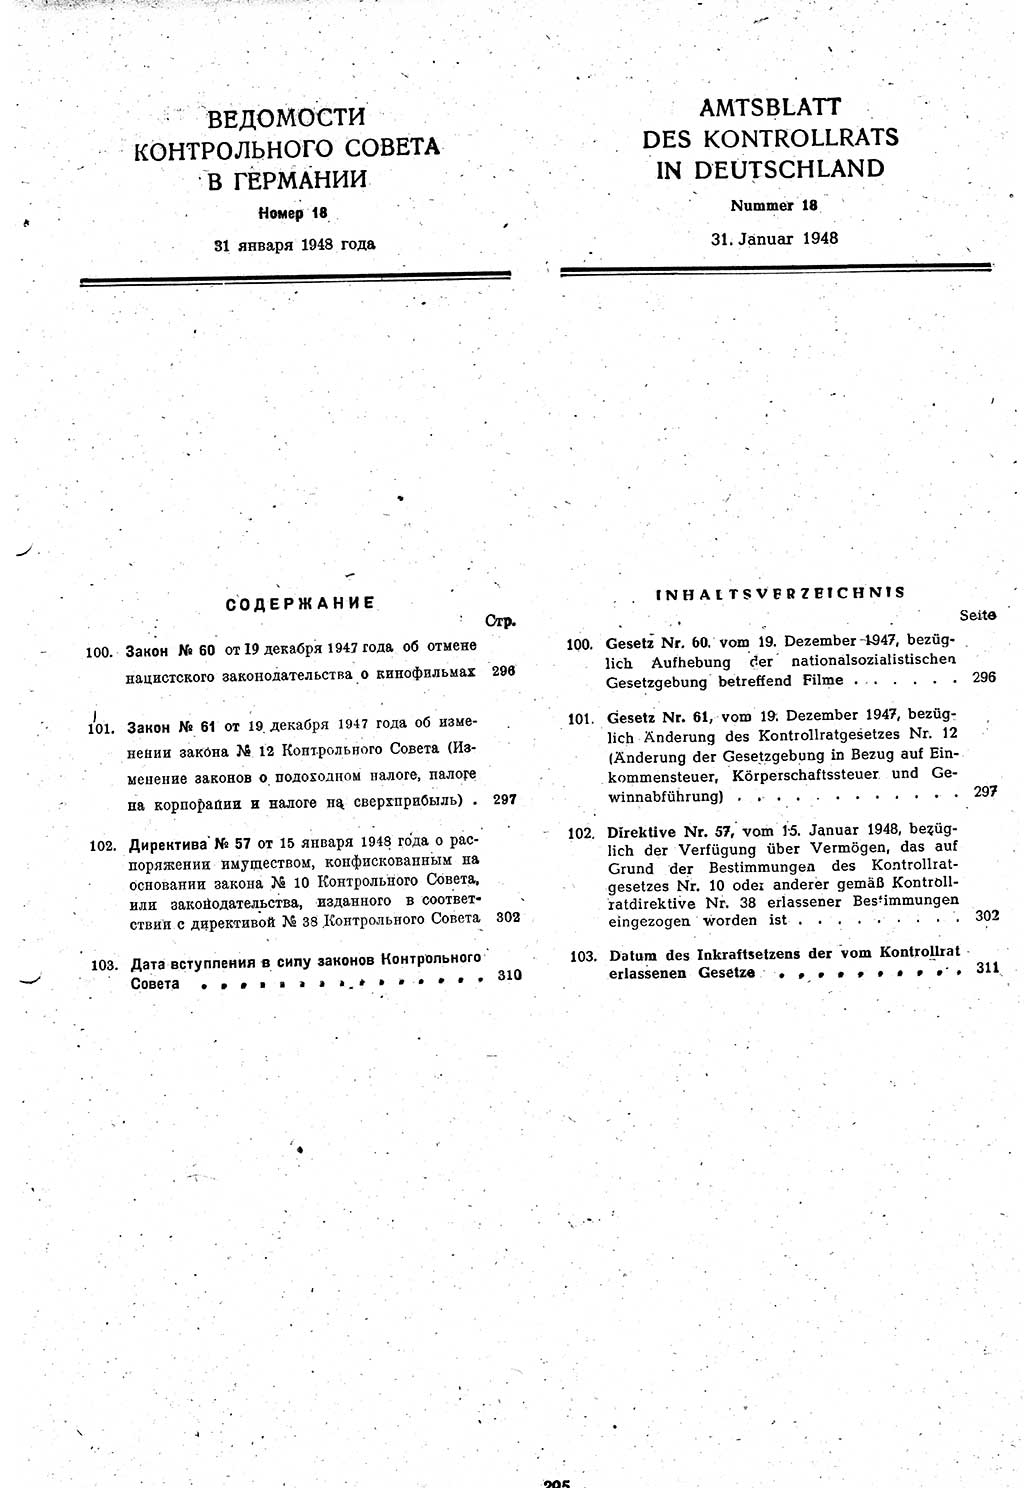 Amtsblatt des Kontrollrats (ABlKR) in Deutschland 1948, Seite 295/2 (ABlKR Dtl. 1948, S. 295/2)